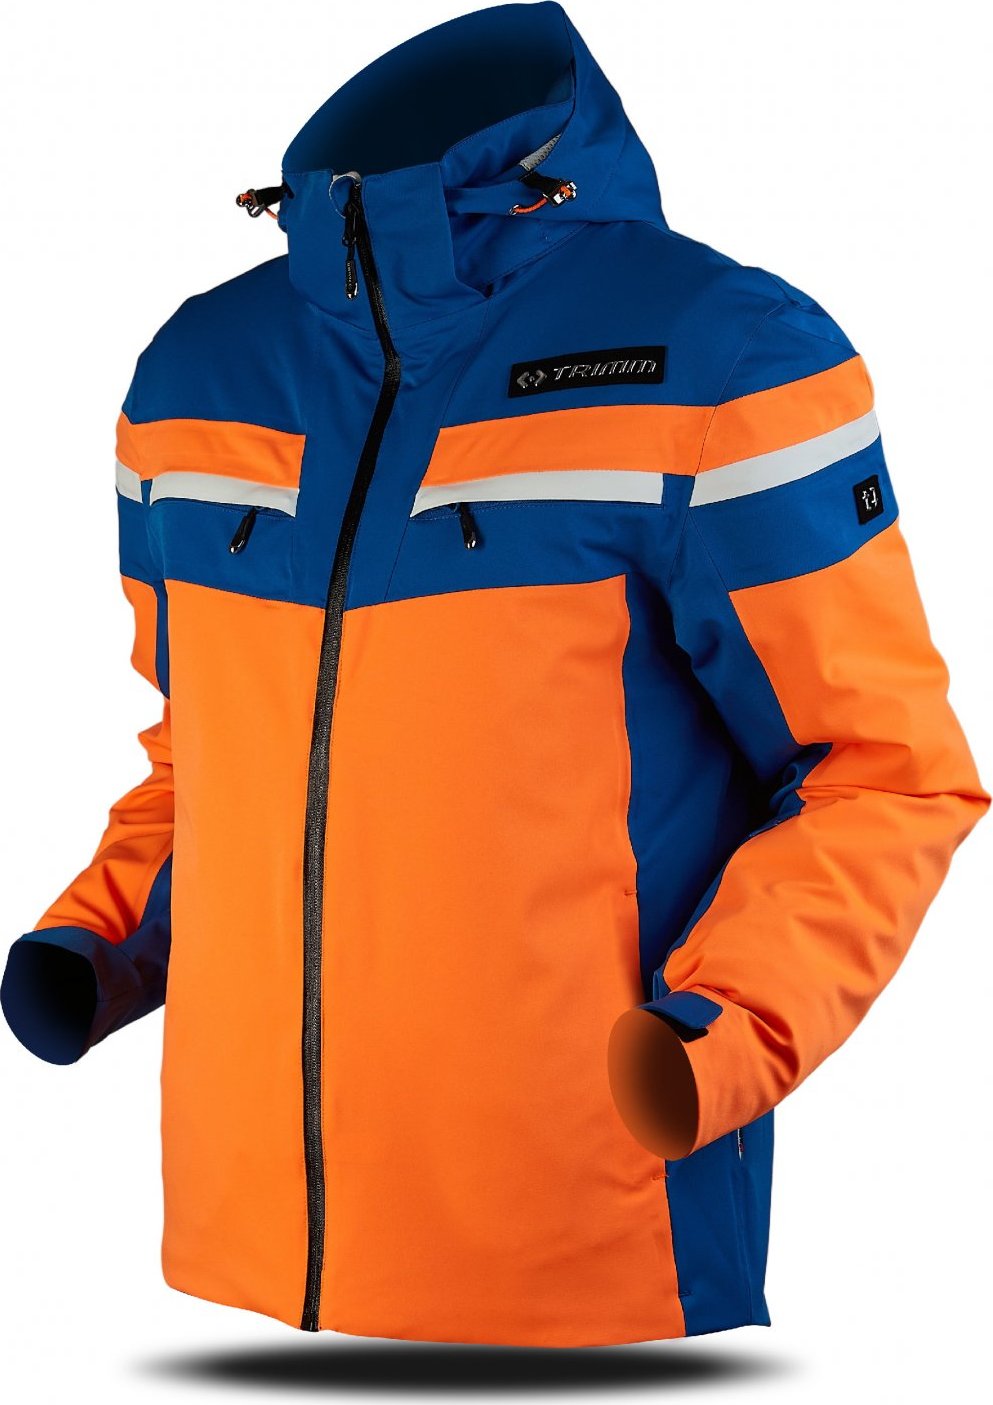 Pánská lyžařská bunda TRIMM Fusion oranžová Velikost: 3XL, Barva: signal orange/navy/white